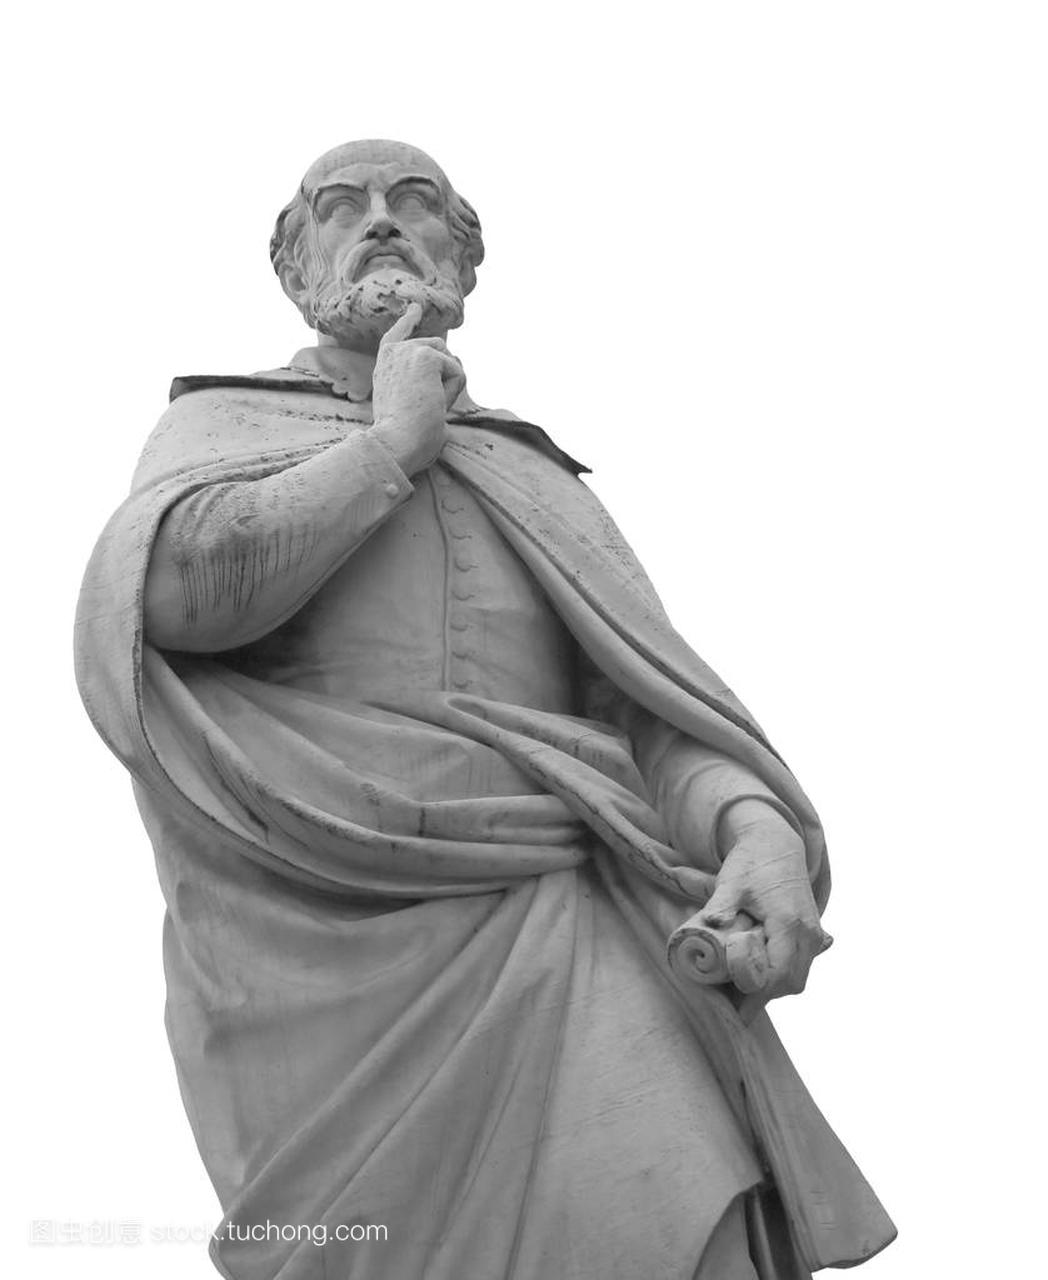 维琴察六意大利雕像的建筑师安德烈 · 帕拉第